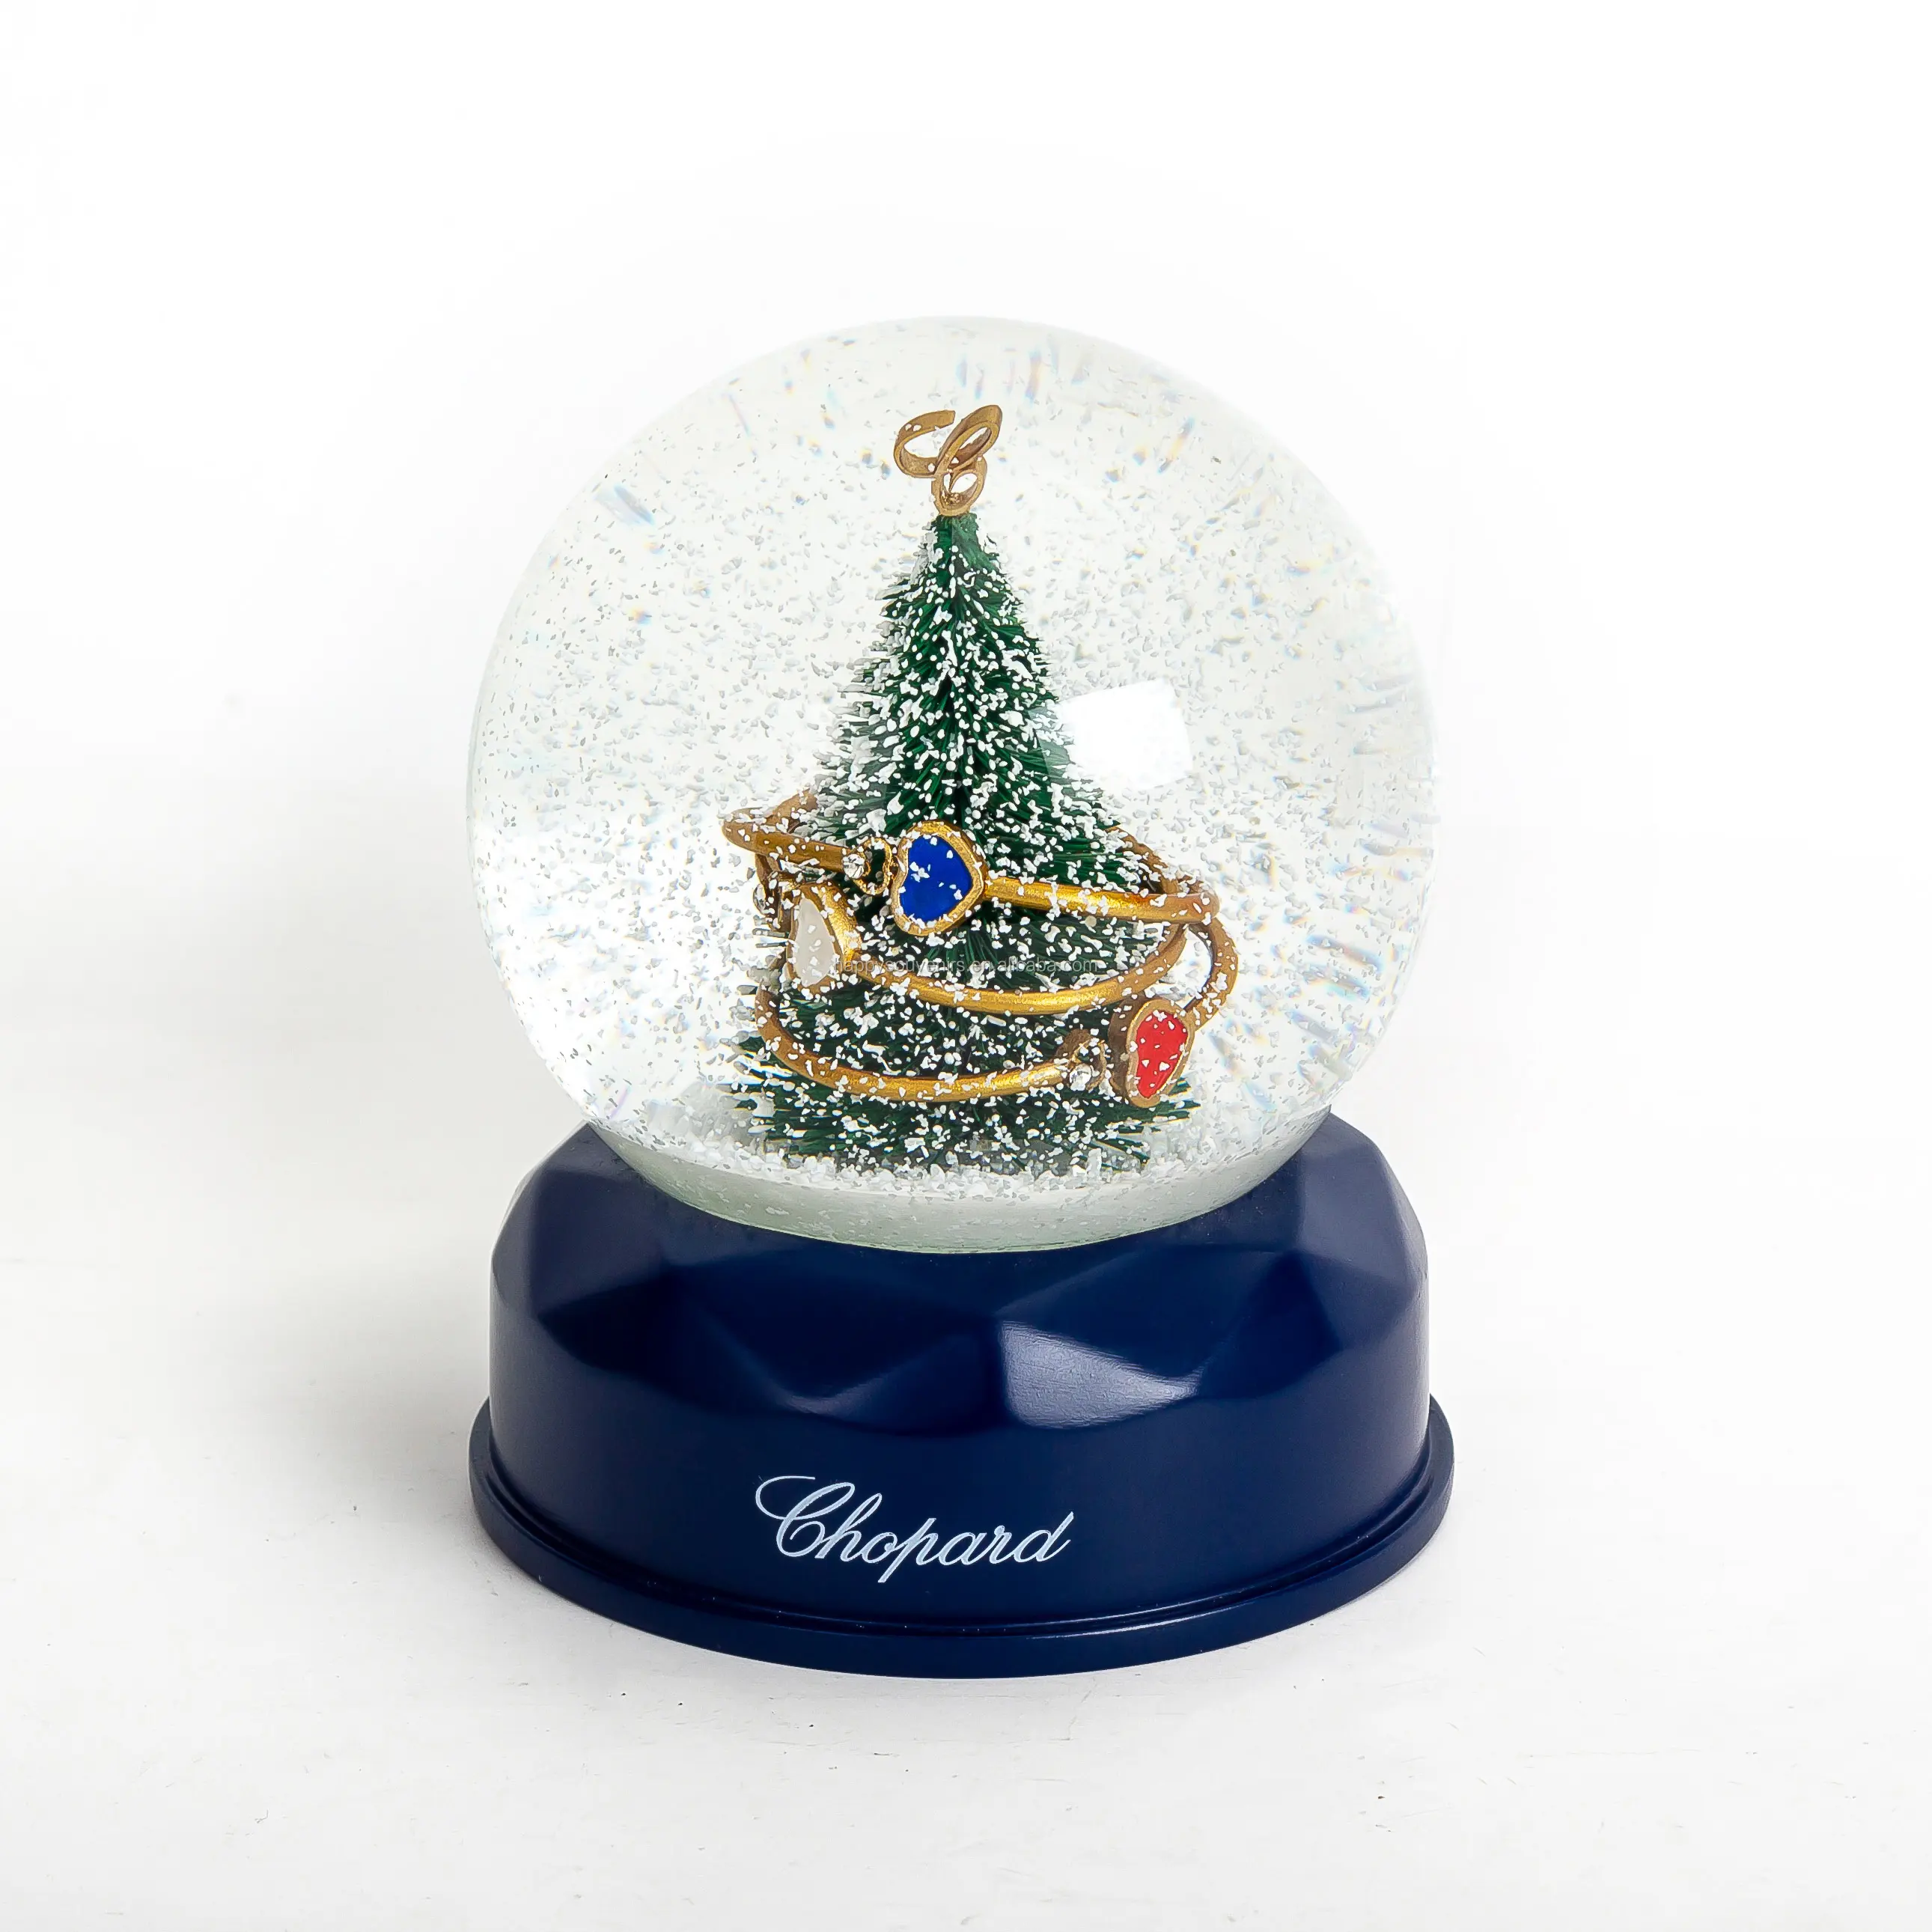 ダイヤモンド型ベースクリスマスツリーギフトスノーグローブ高級ブランド時計会社プロモーションスノーボールサンタスノードーム